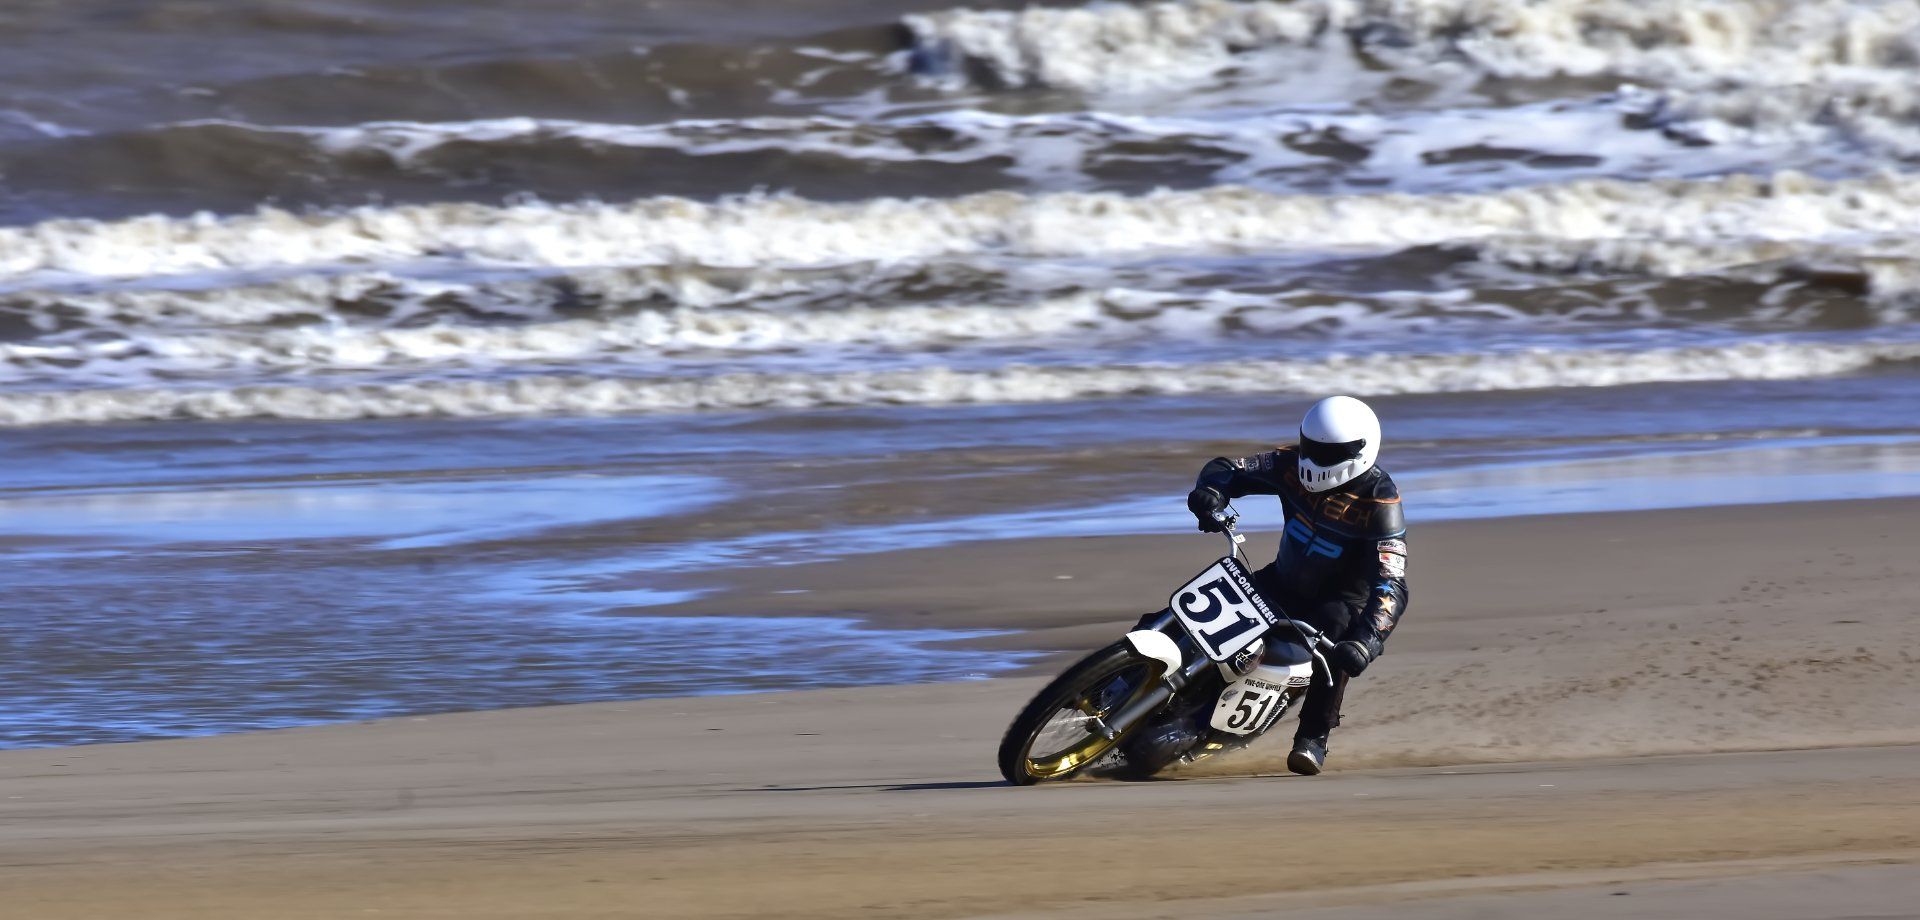 Mablethorpe Sand Racing